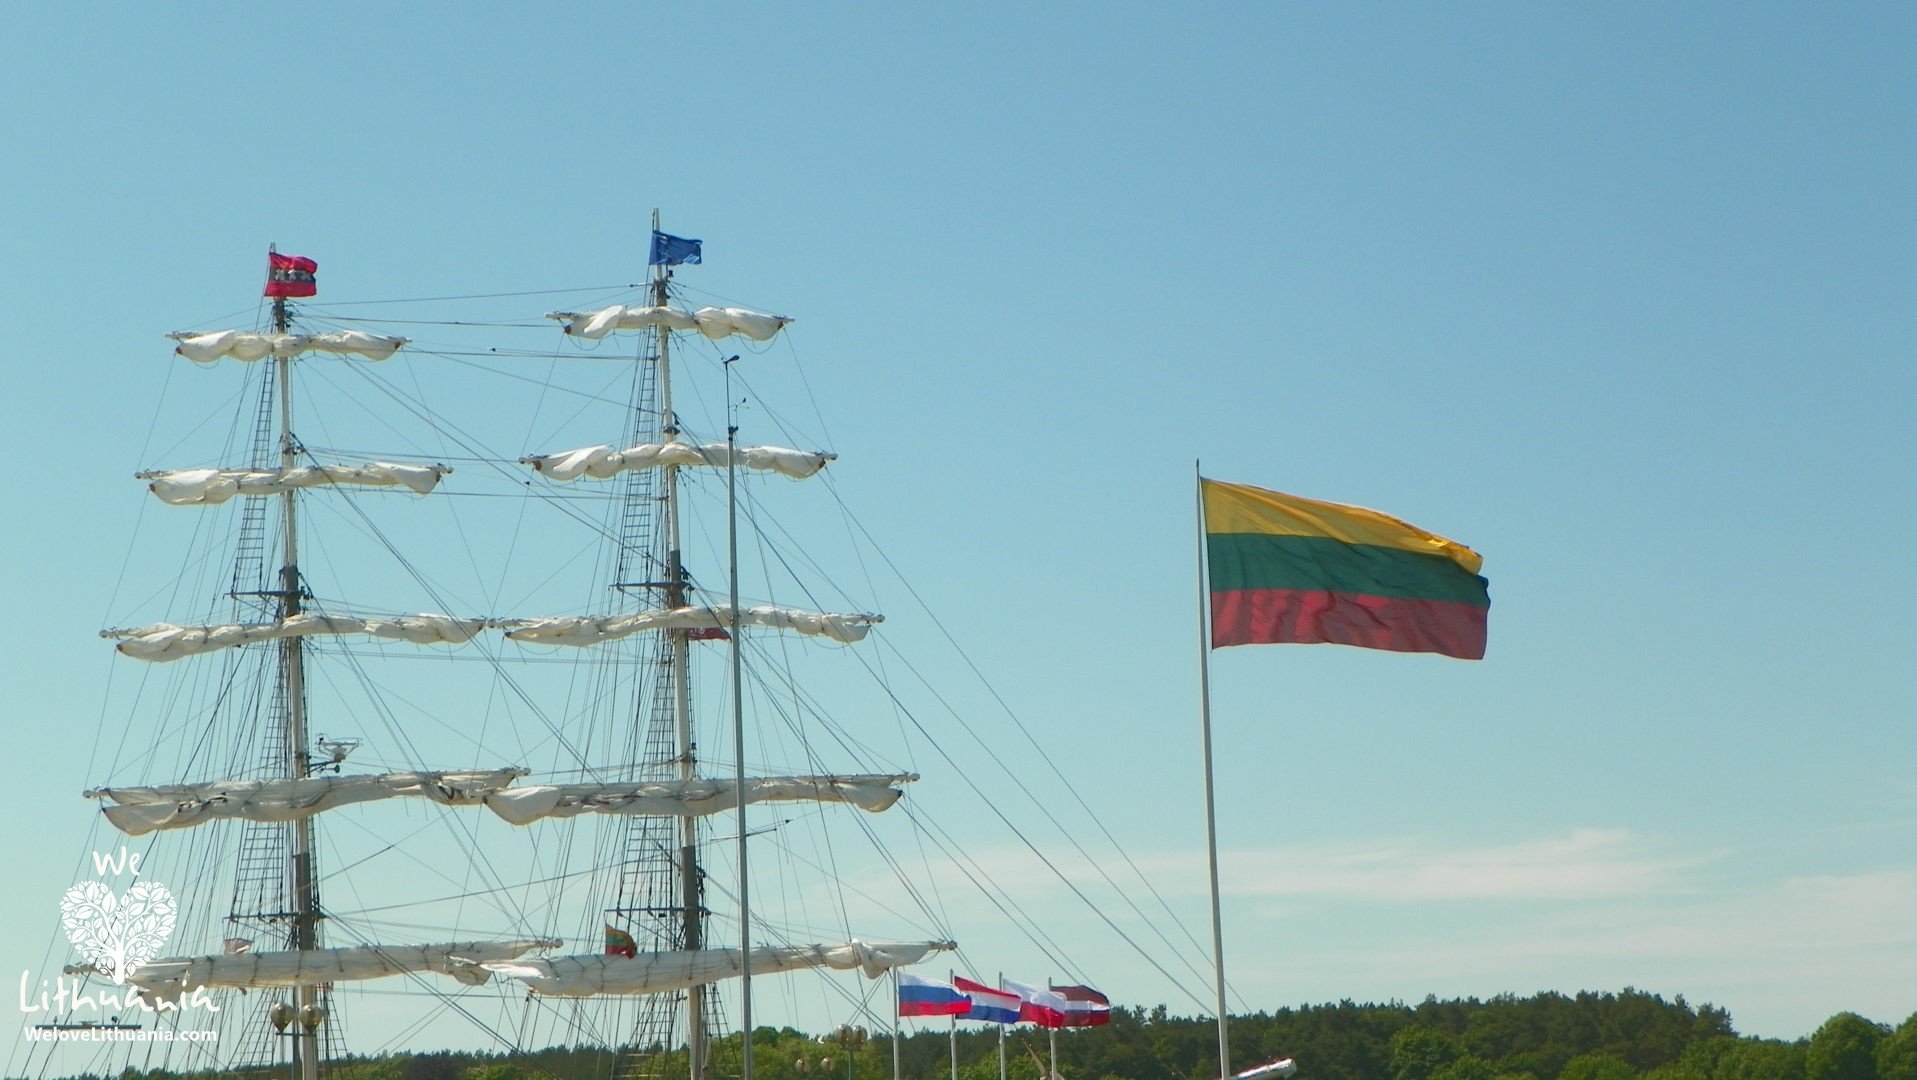 Nuotrauka daryta Baltijos būrinių laivų regatos metu